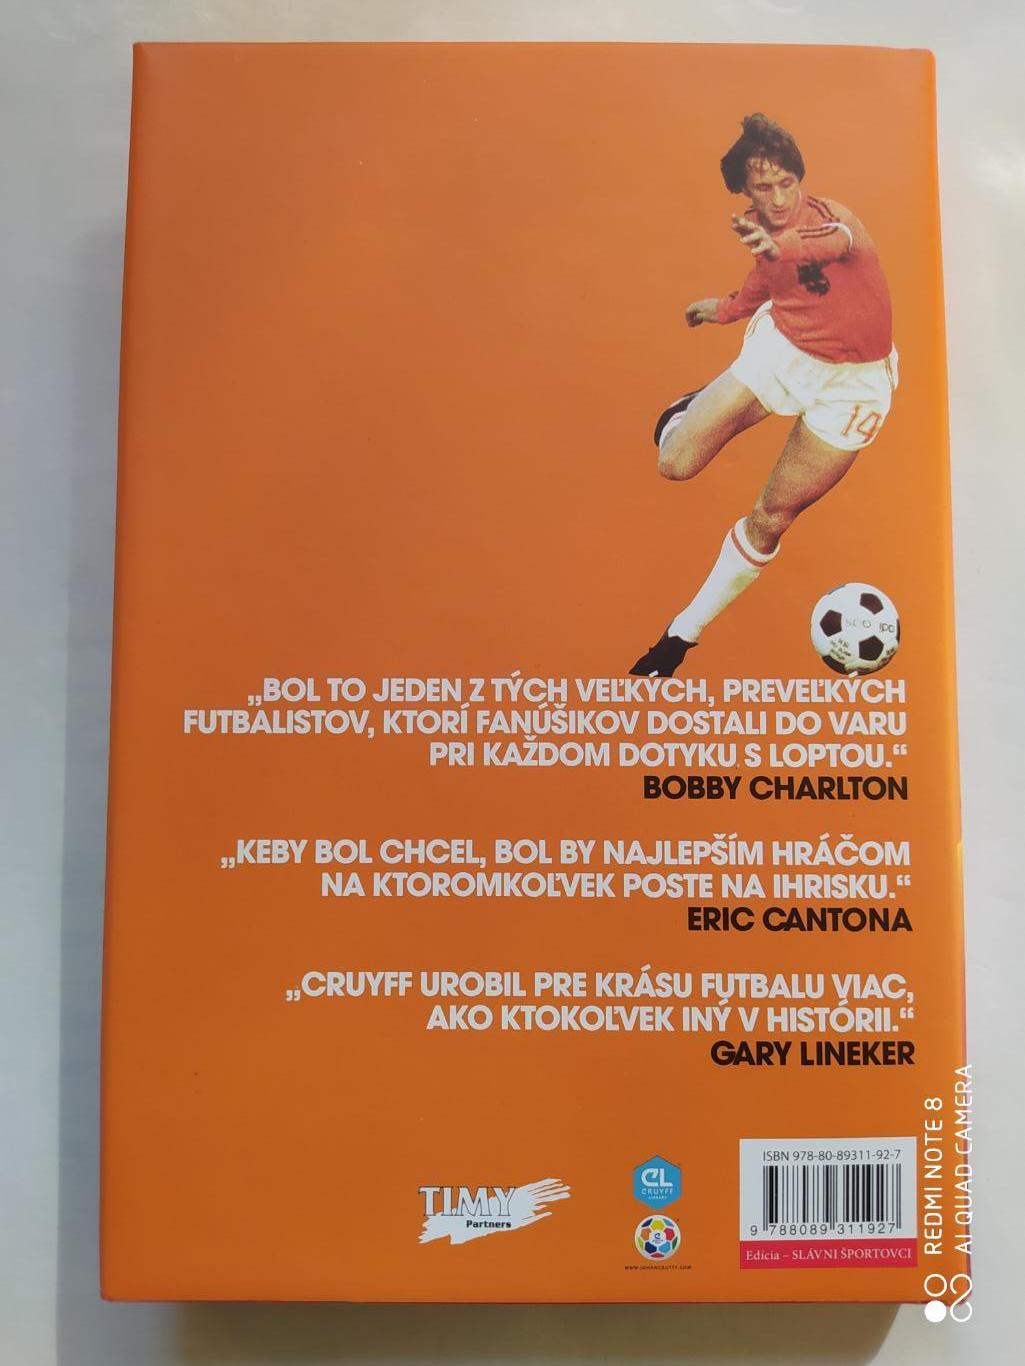 Johan Cruyff Autobiografia Йохан Кройфф. Моя жизнь Автобиография 2017 г. 7